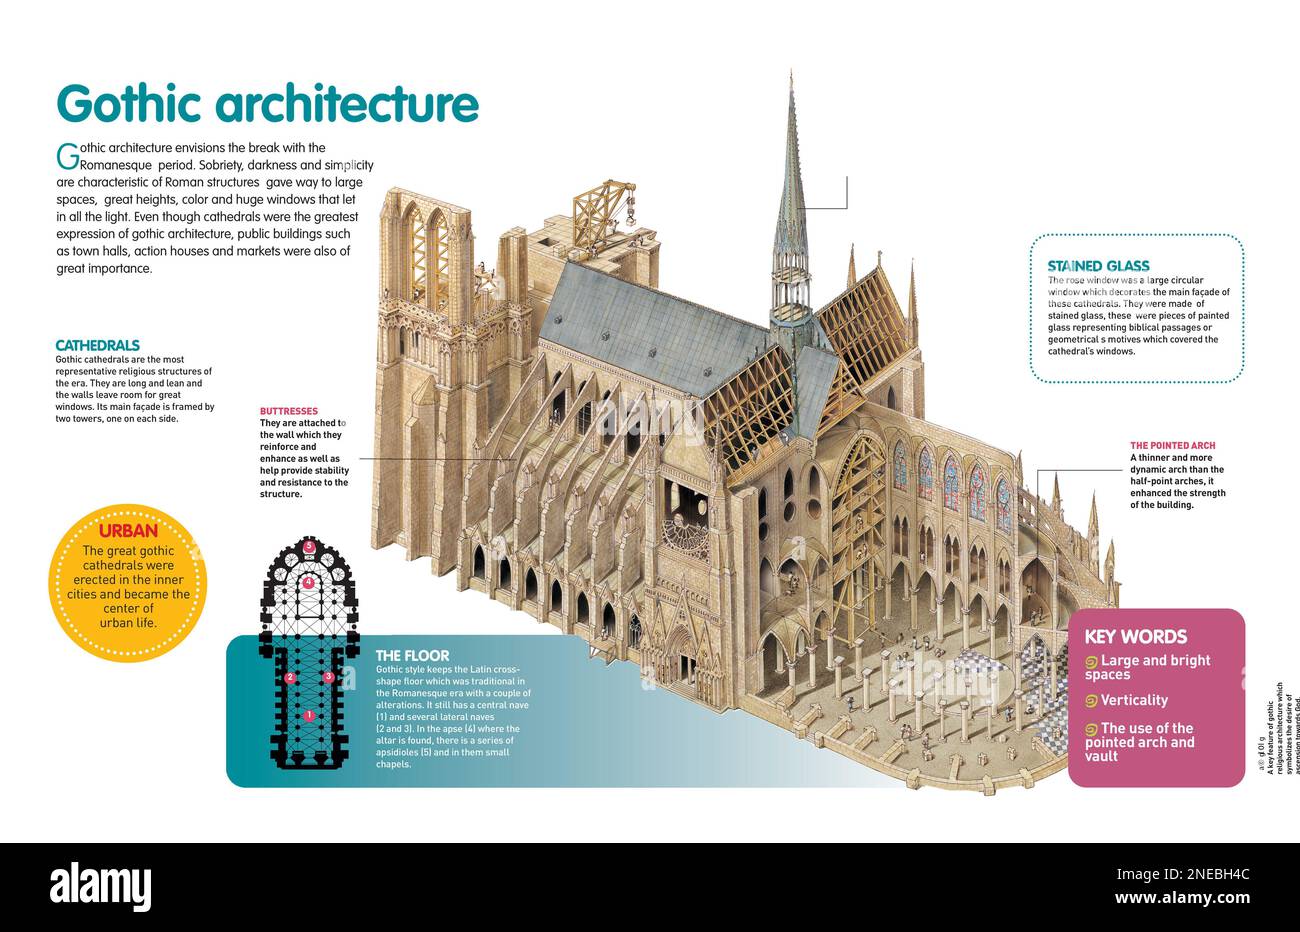 Infografica sull'arte gotica che si sviluppò a partire dal 12th° secolo nell'Europa occidentale, la cui rappresentazione più importante sono le cattedrali. [QuarkXPress (.qxp); Adobe InDesign (.indd); 4960x3188]. Foto Stock